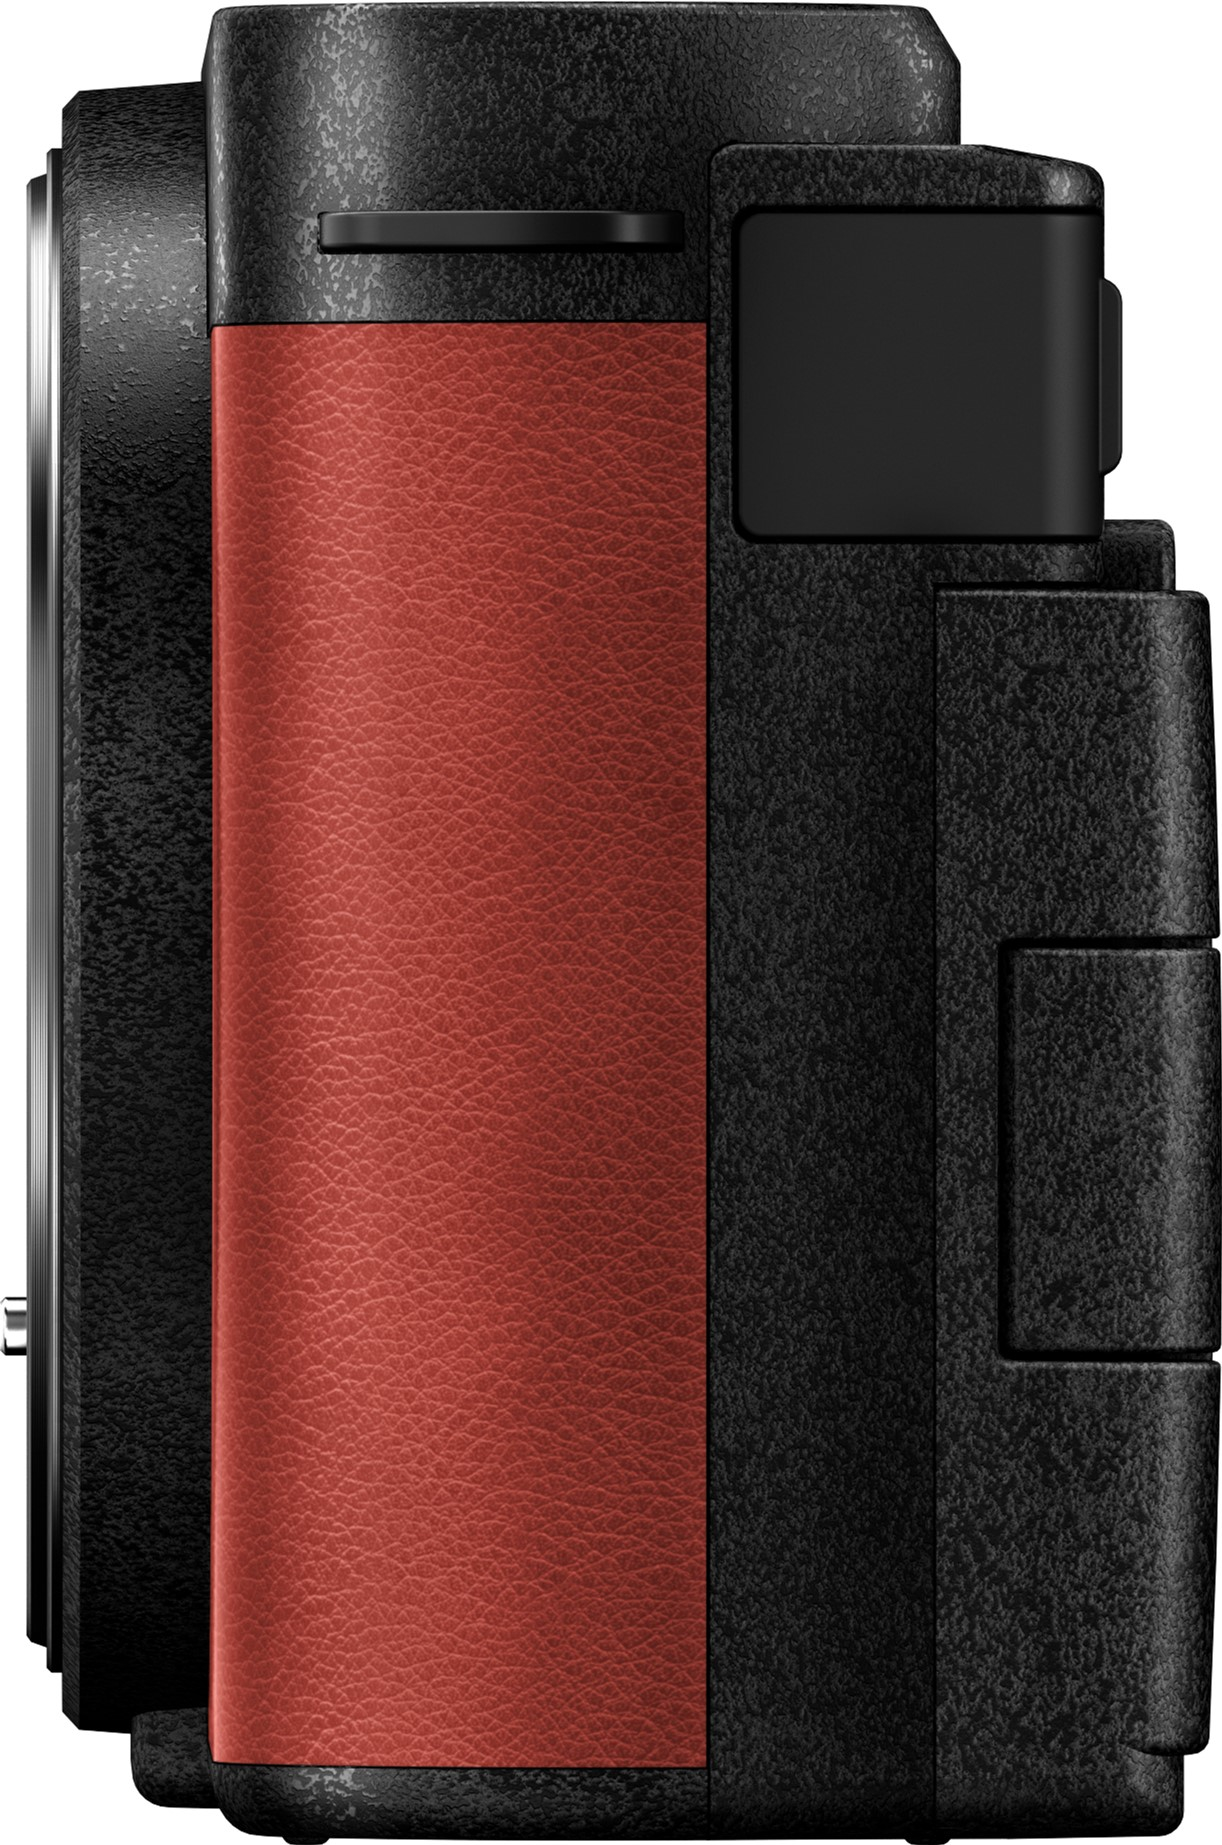 Фотоапарат Panasonic Lumix DC-S9 + 20-60mm f/3.5-5.6 Crimson Red (DC-S9KE-R)фото6